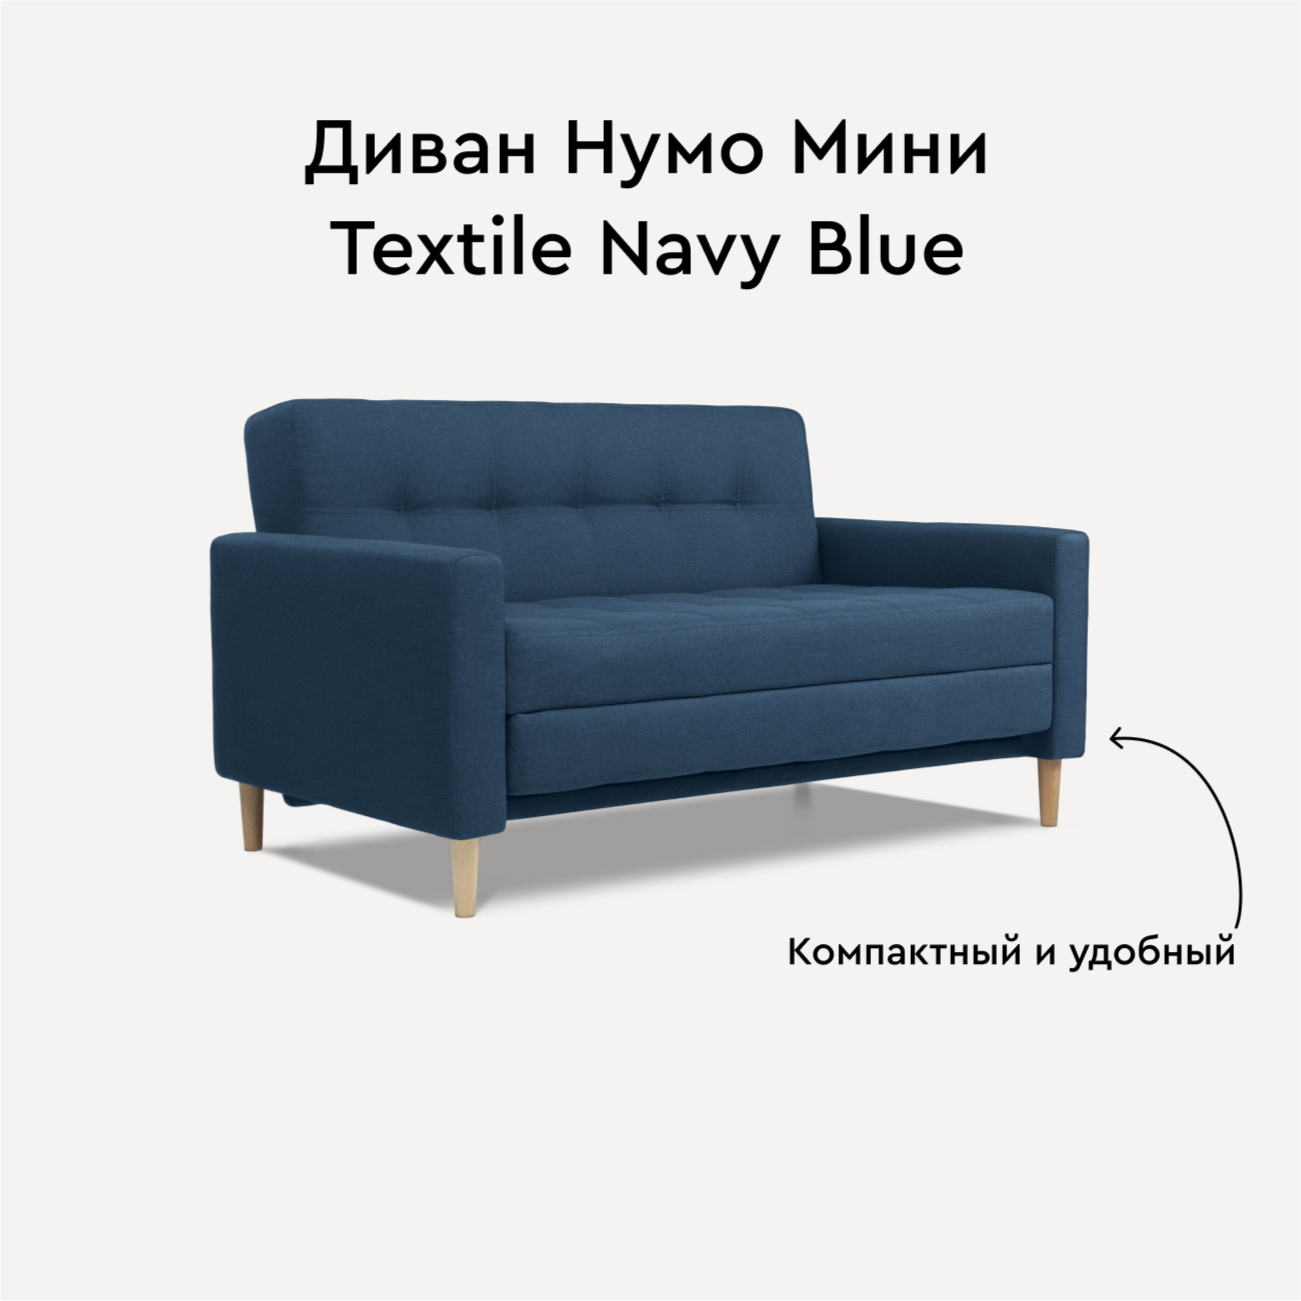 Диван Divan.ru Нумо Мини Textile Navy Blue 142х87х79 - купить в Москве, цены на Мегамаркет | 600016270999